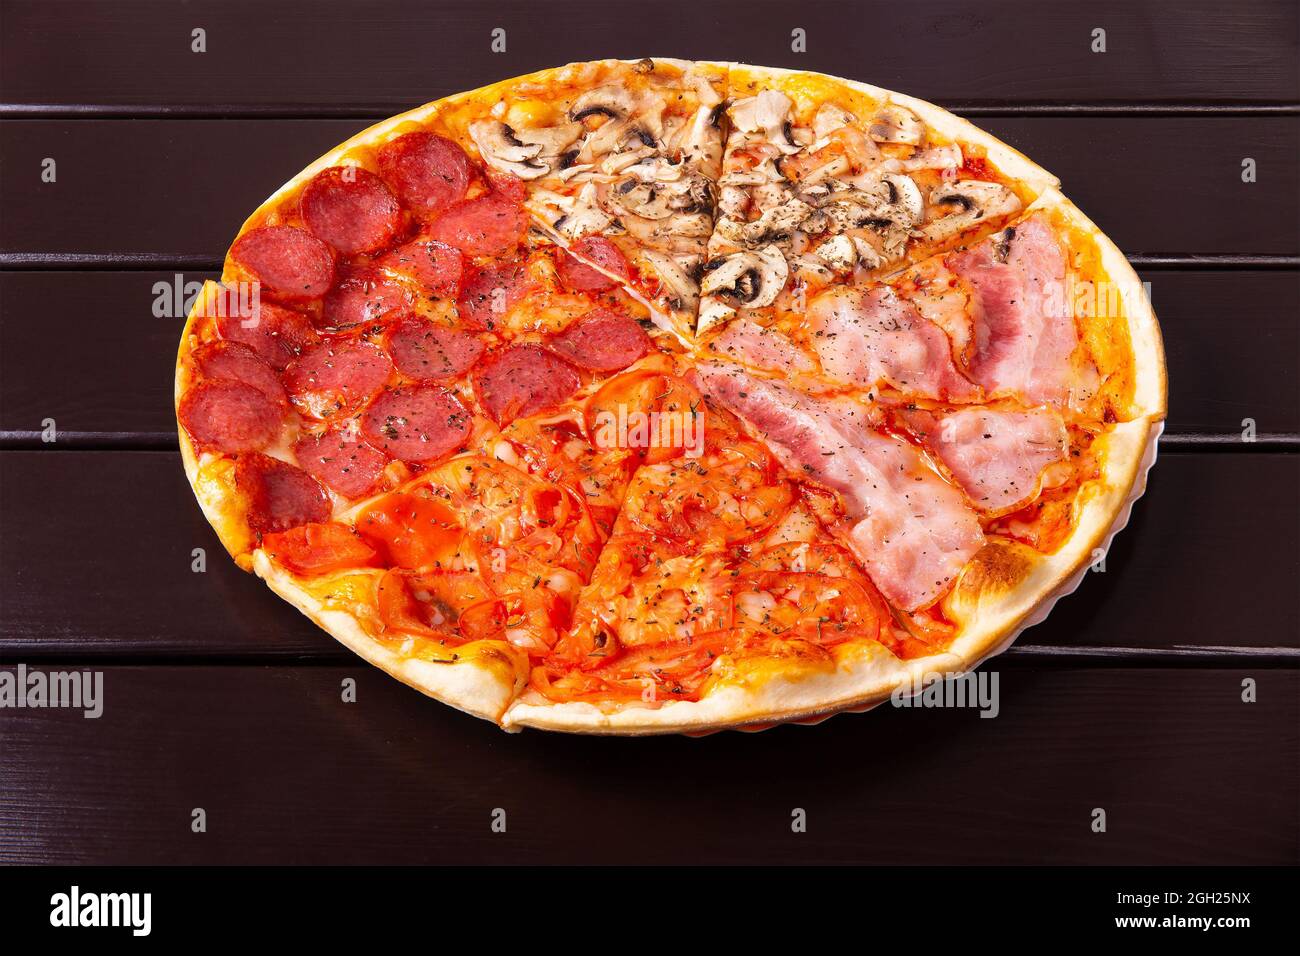 итальянская пицца четыре сезона фото 75